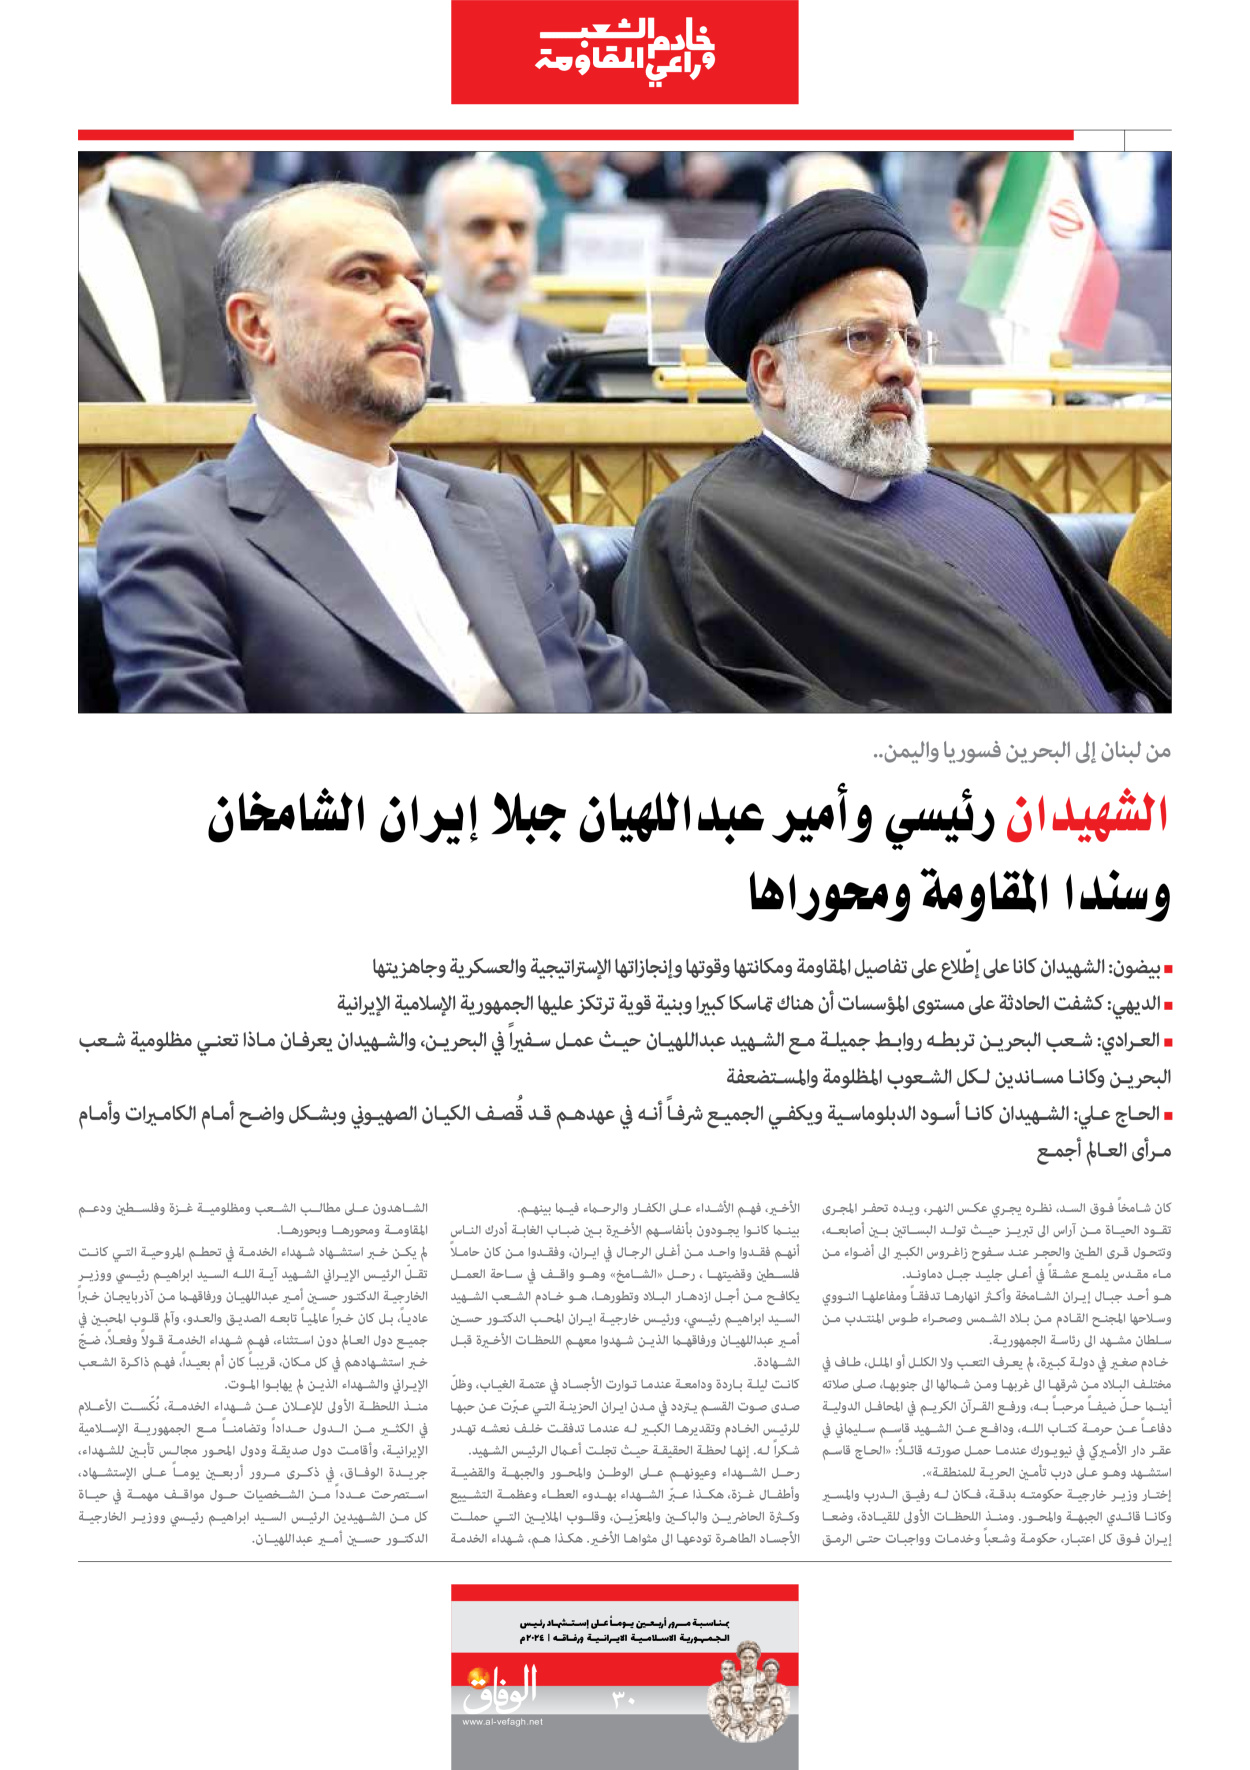 صحیفة ایران الدولیة الوفاق - ملحق ویژه نامه چهلم شهید رییسی - ٢٩ يونيو ٢٠٢٤ - الصفحة ۳۰